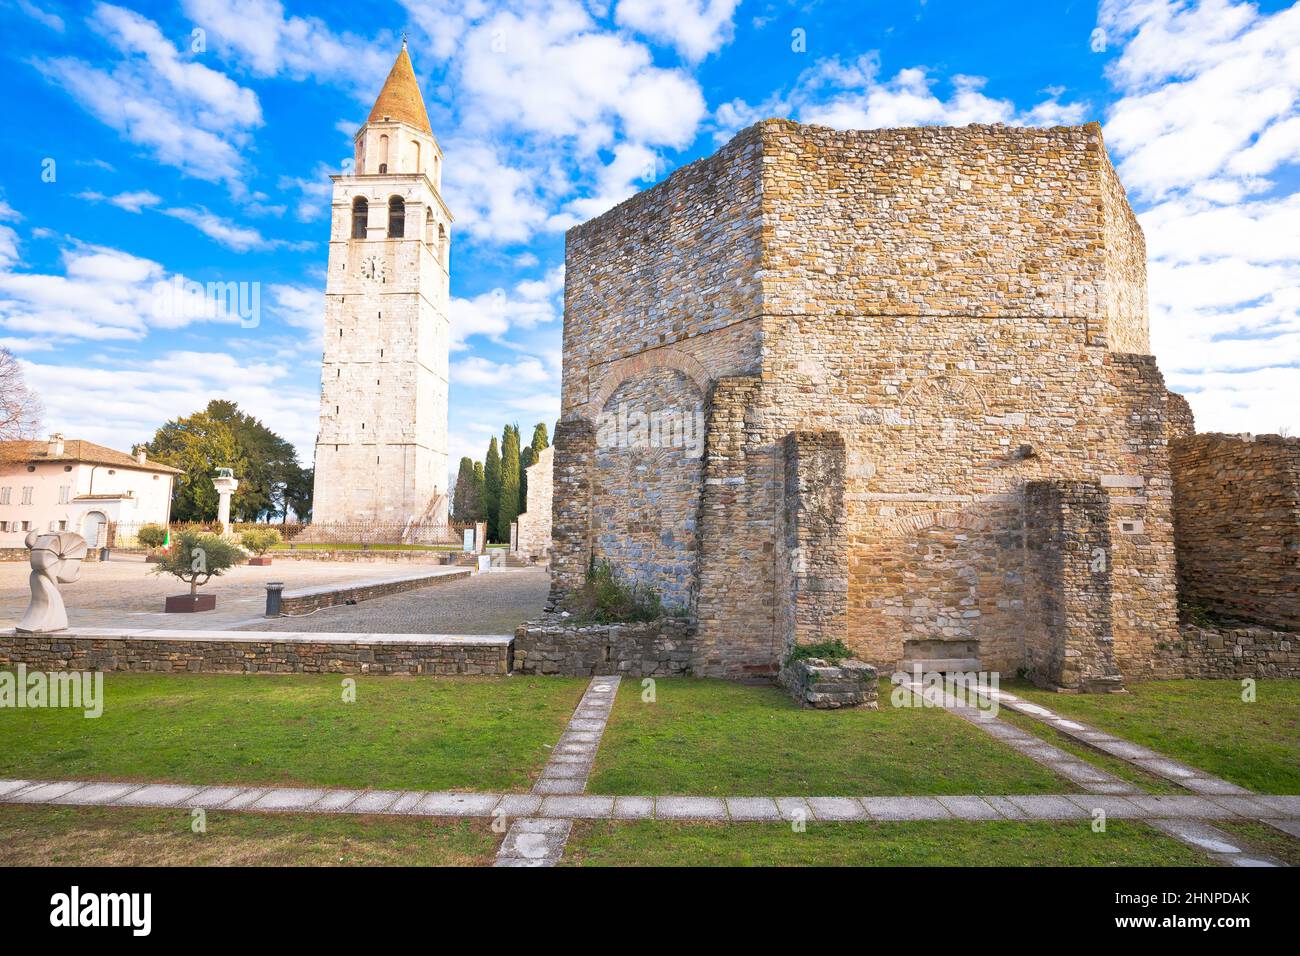 Basilica di Santa Maria Assunta in Aquileia, UNESCO world heritage site Stock Photo